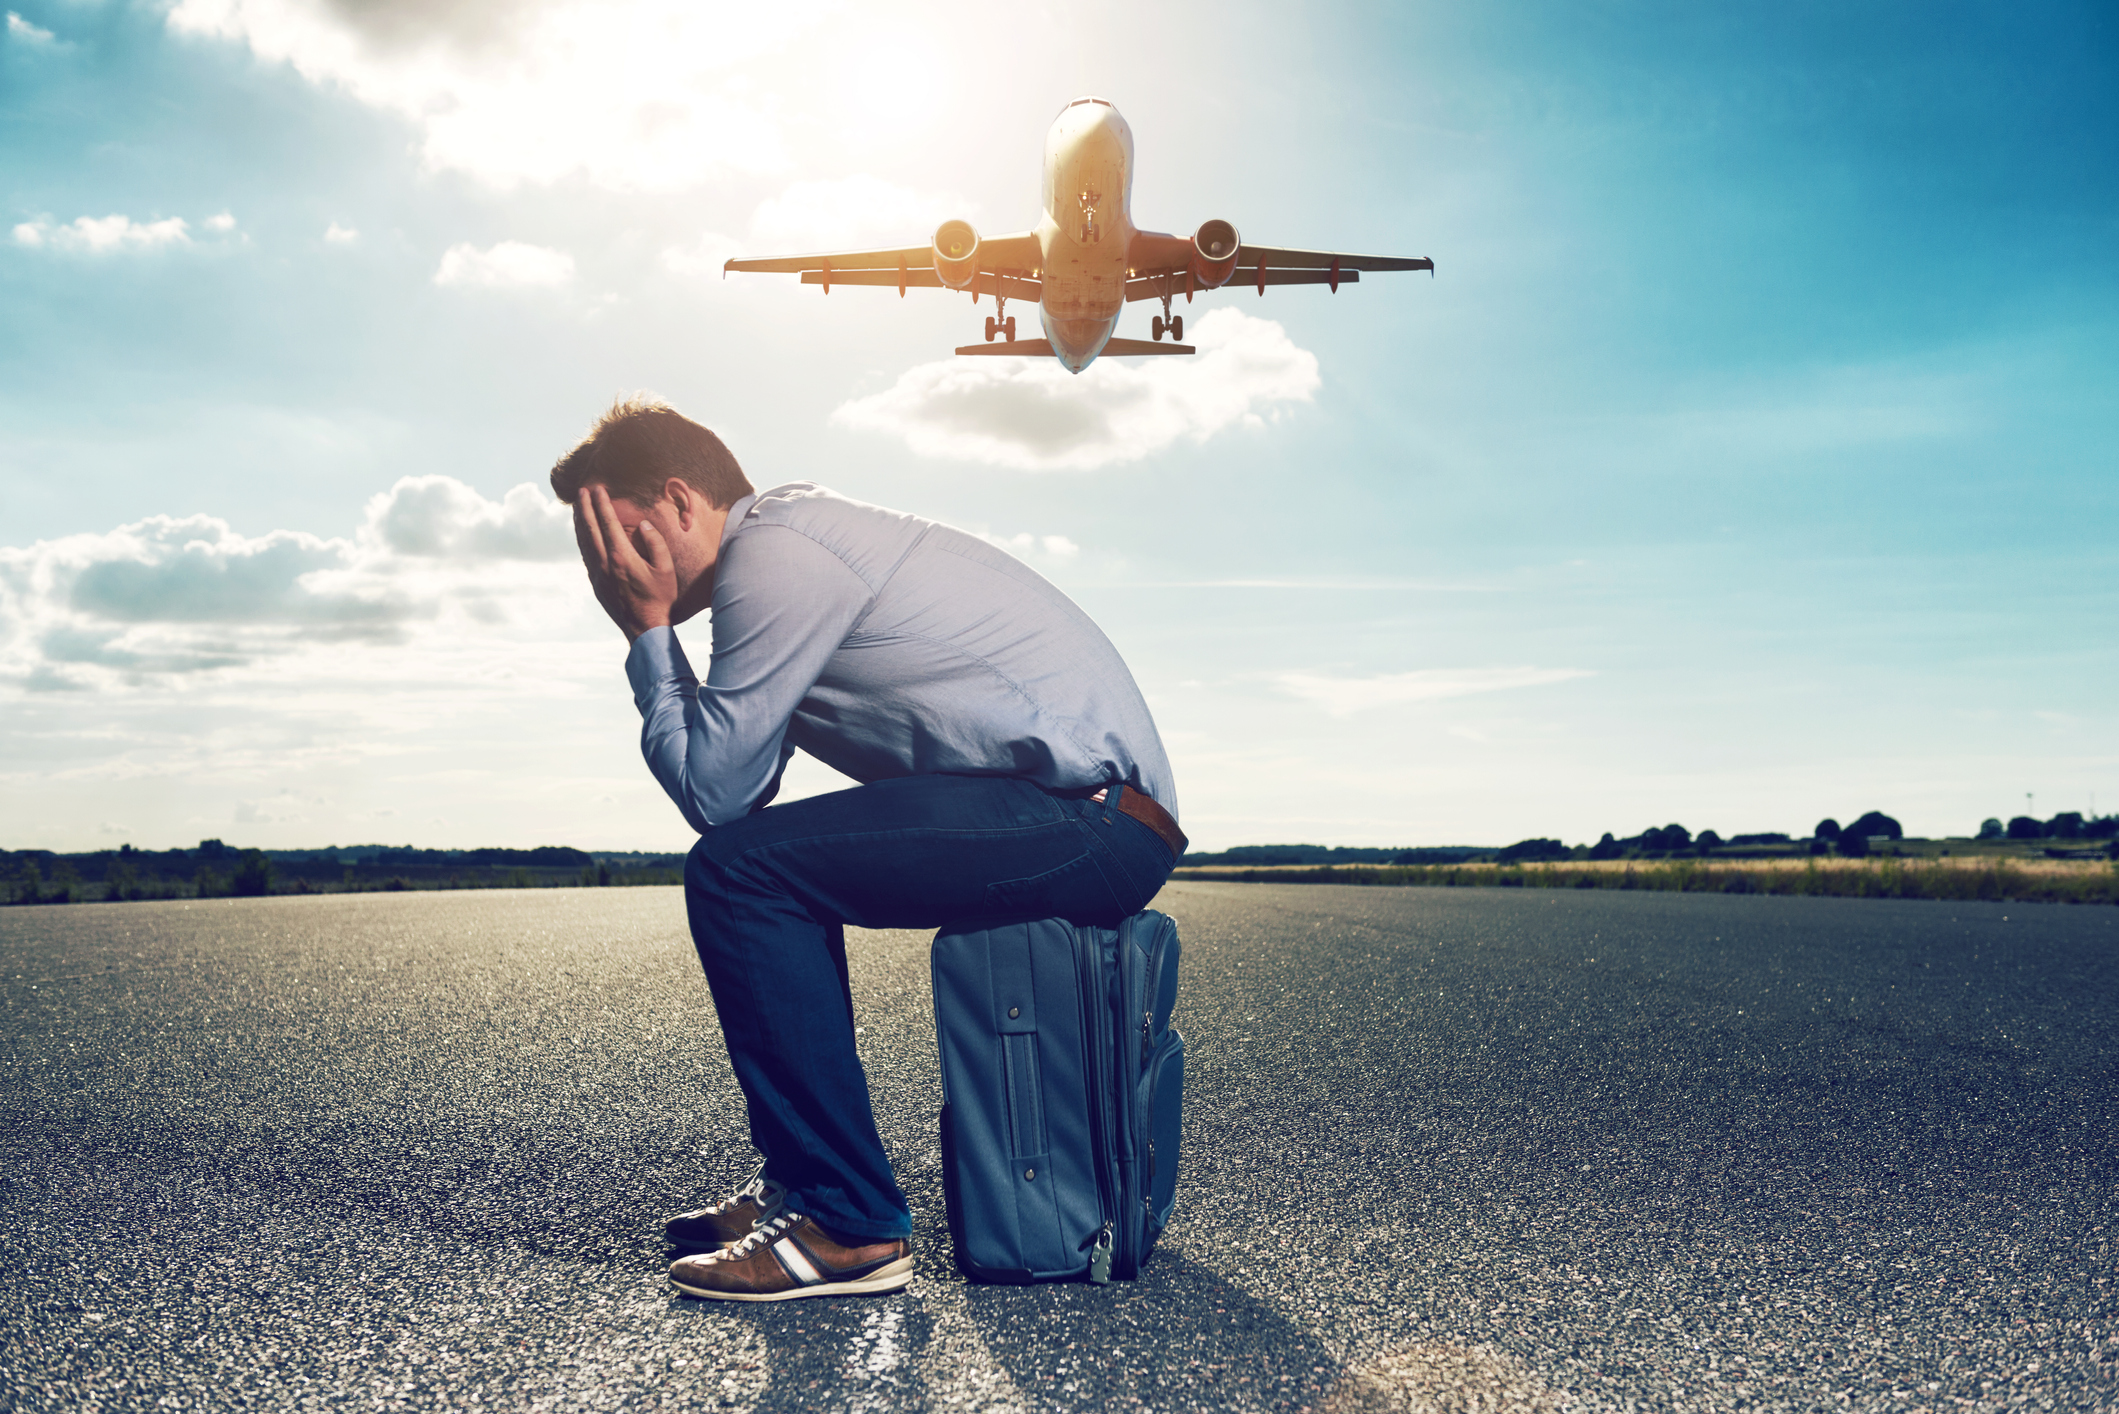 Ein Mann sitzt auf einem blauen Koffer und hat die Hände vors Gesicht geschlagen, während hinter ihm ein Flugzeug fliegt.